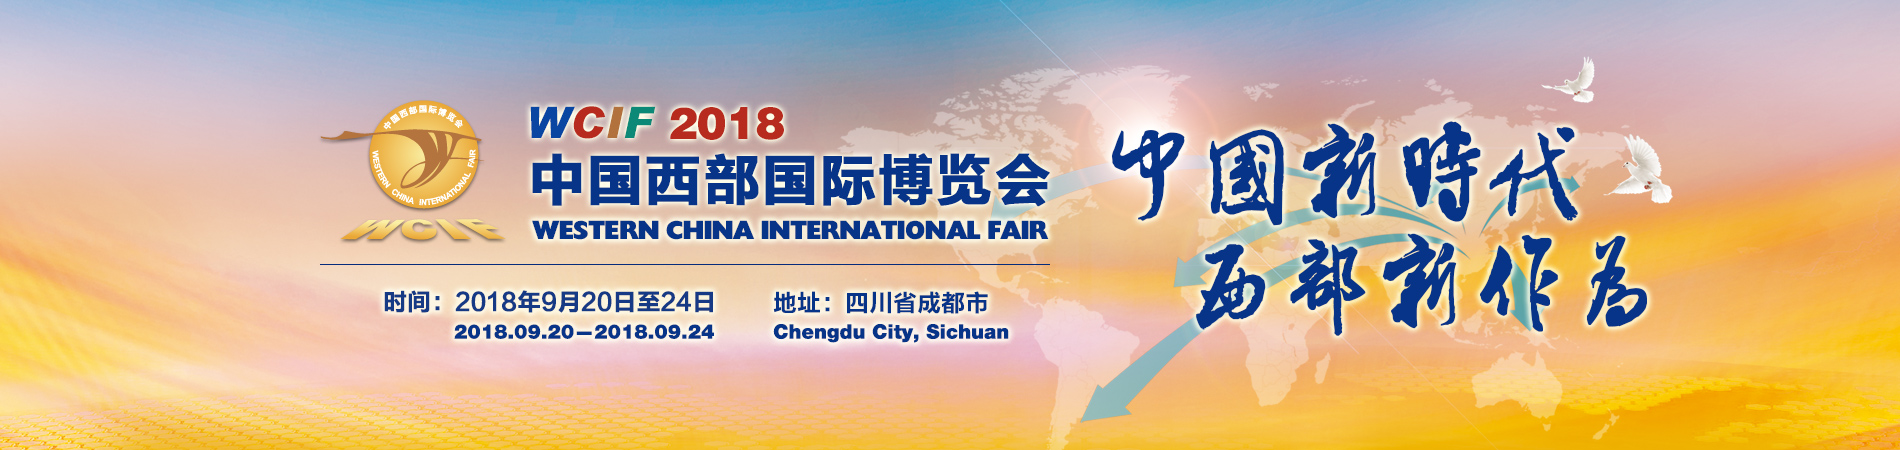 2018中国西部国际数字经济博览会-2018第十七届中国西部国际博览会数字经济馆